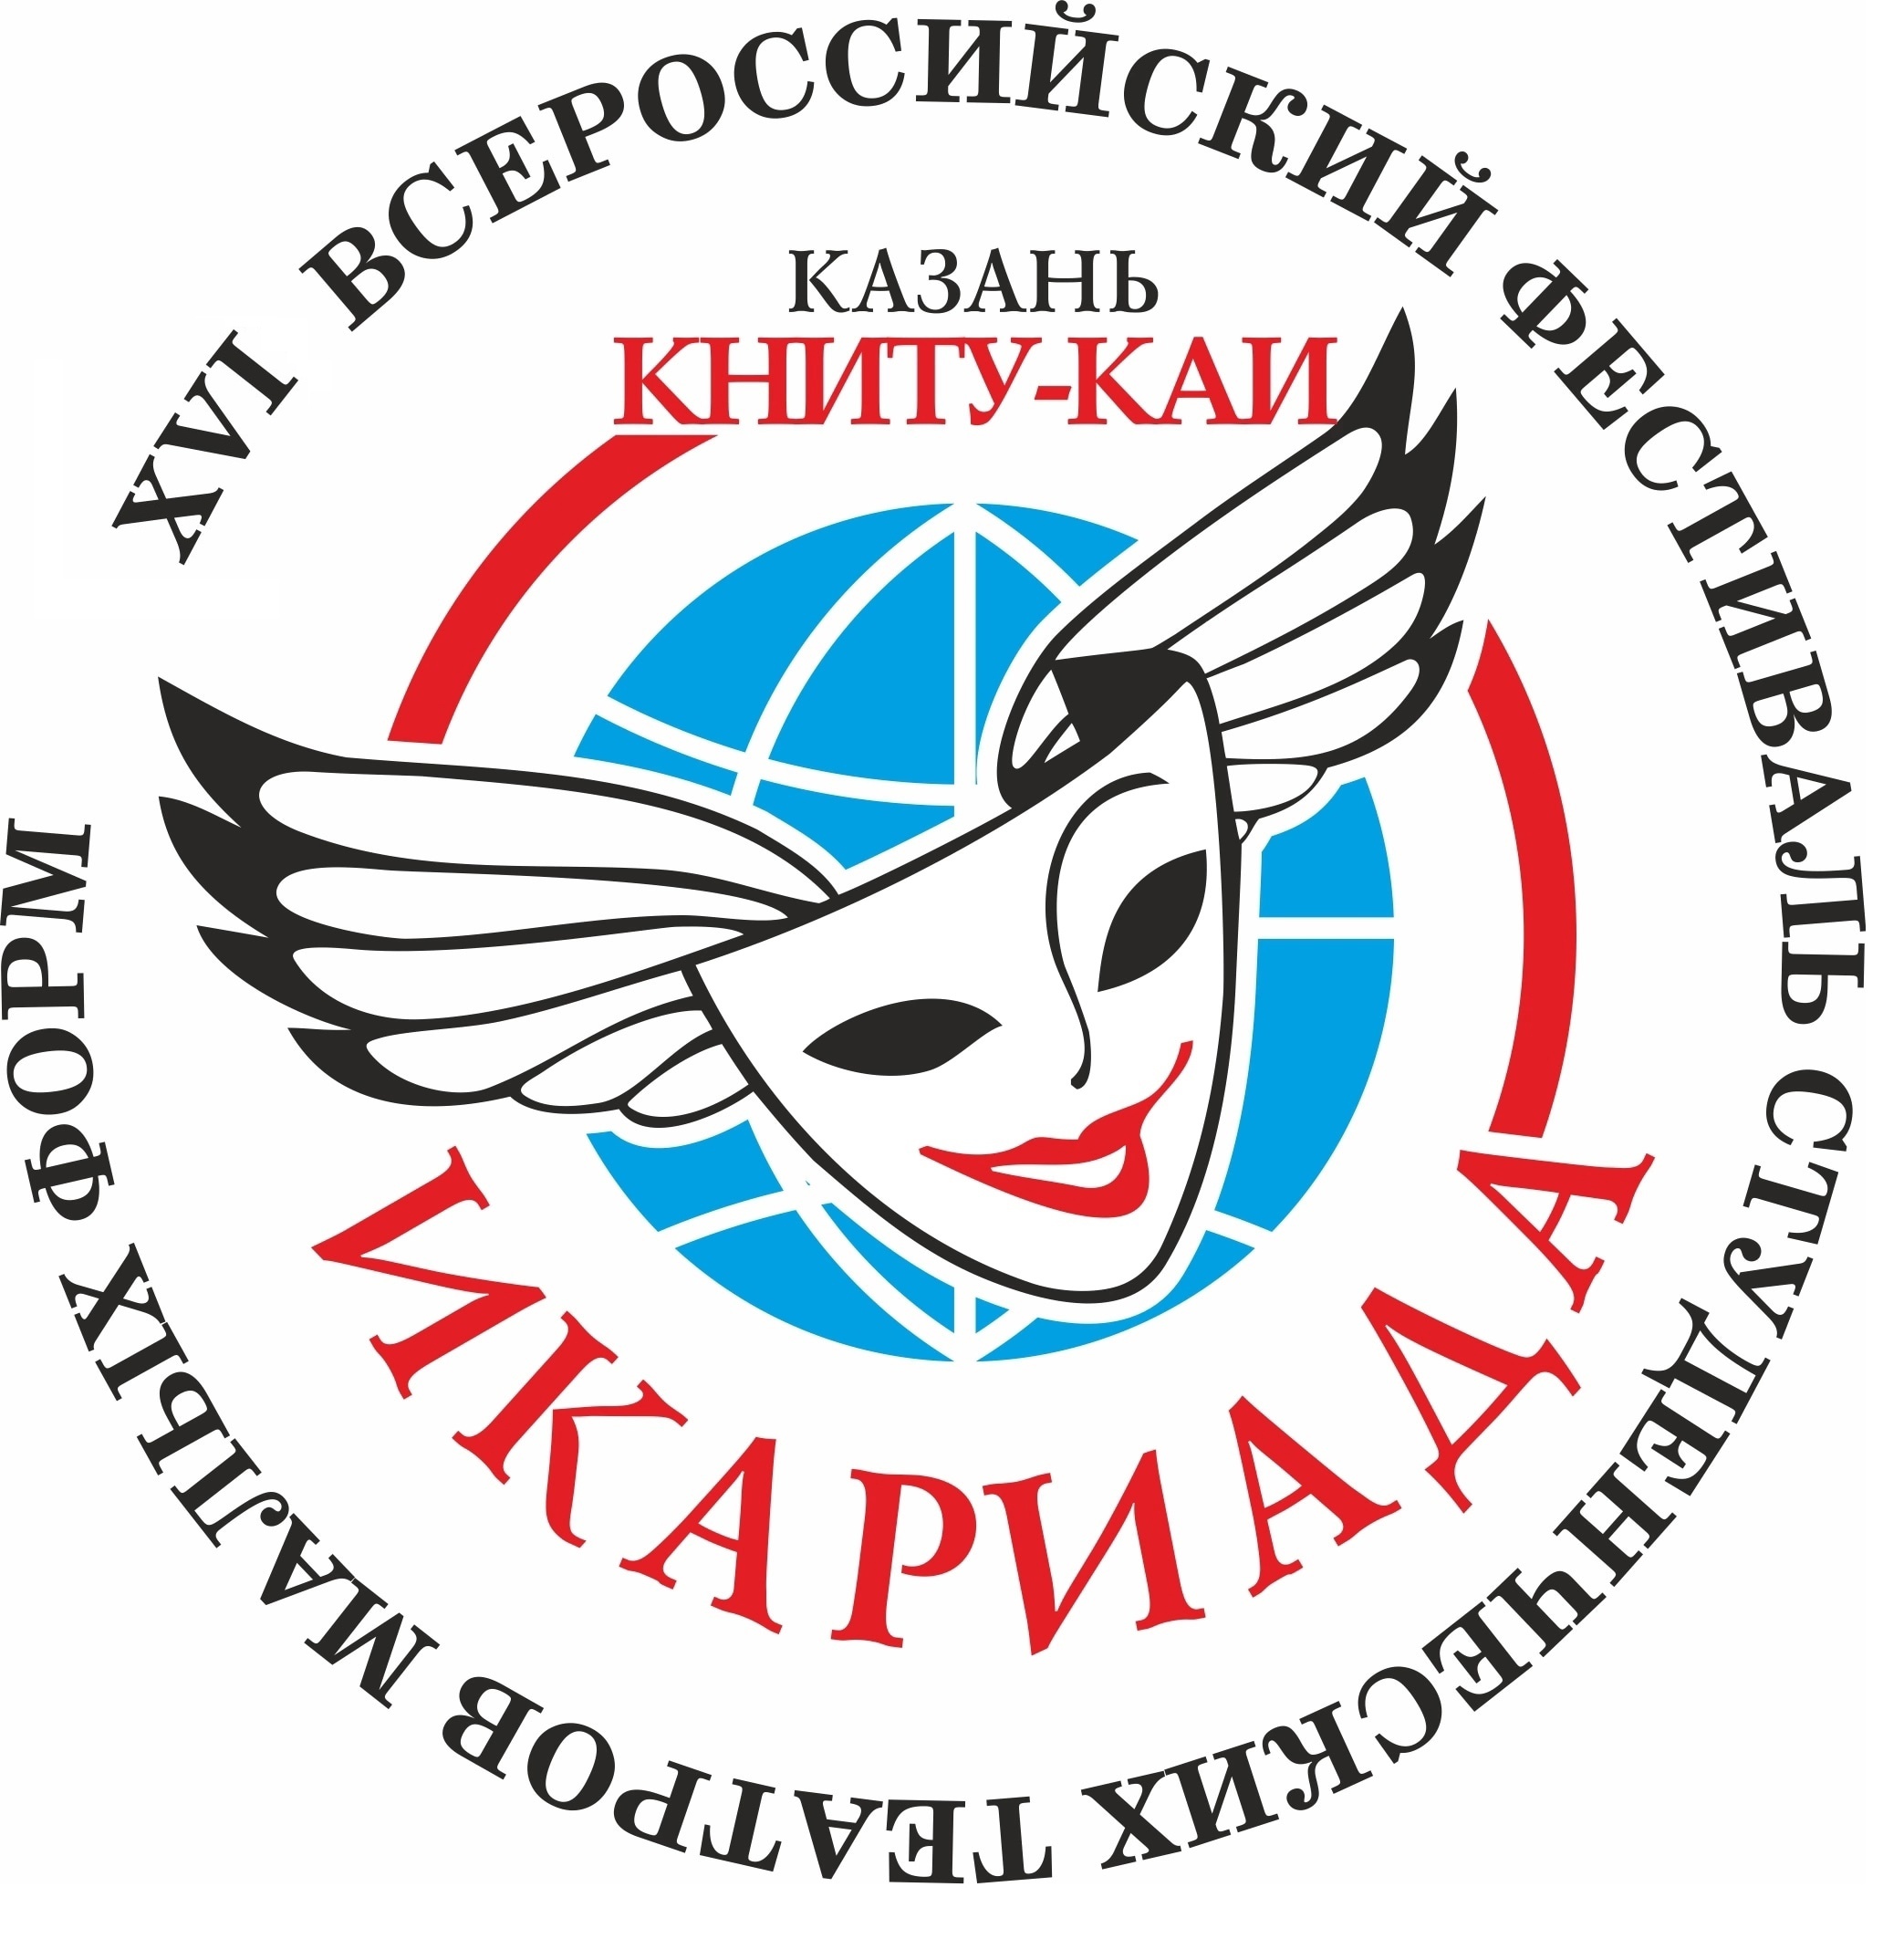 Творческий коллектив университета принял участие во Всероссийском фестивале  студенческих театров  